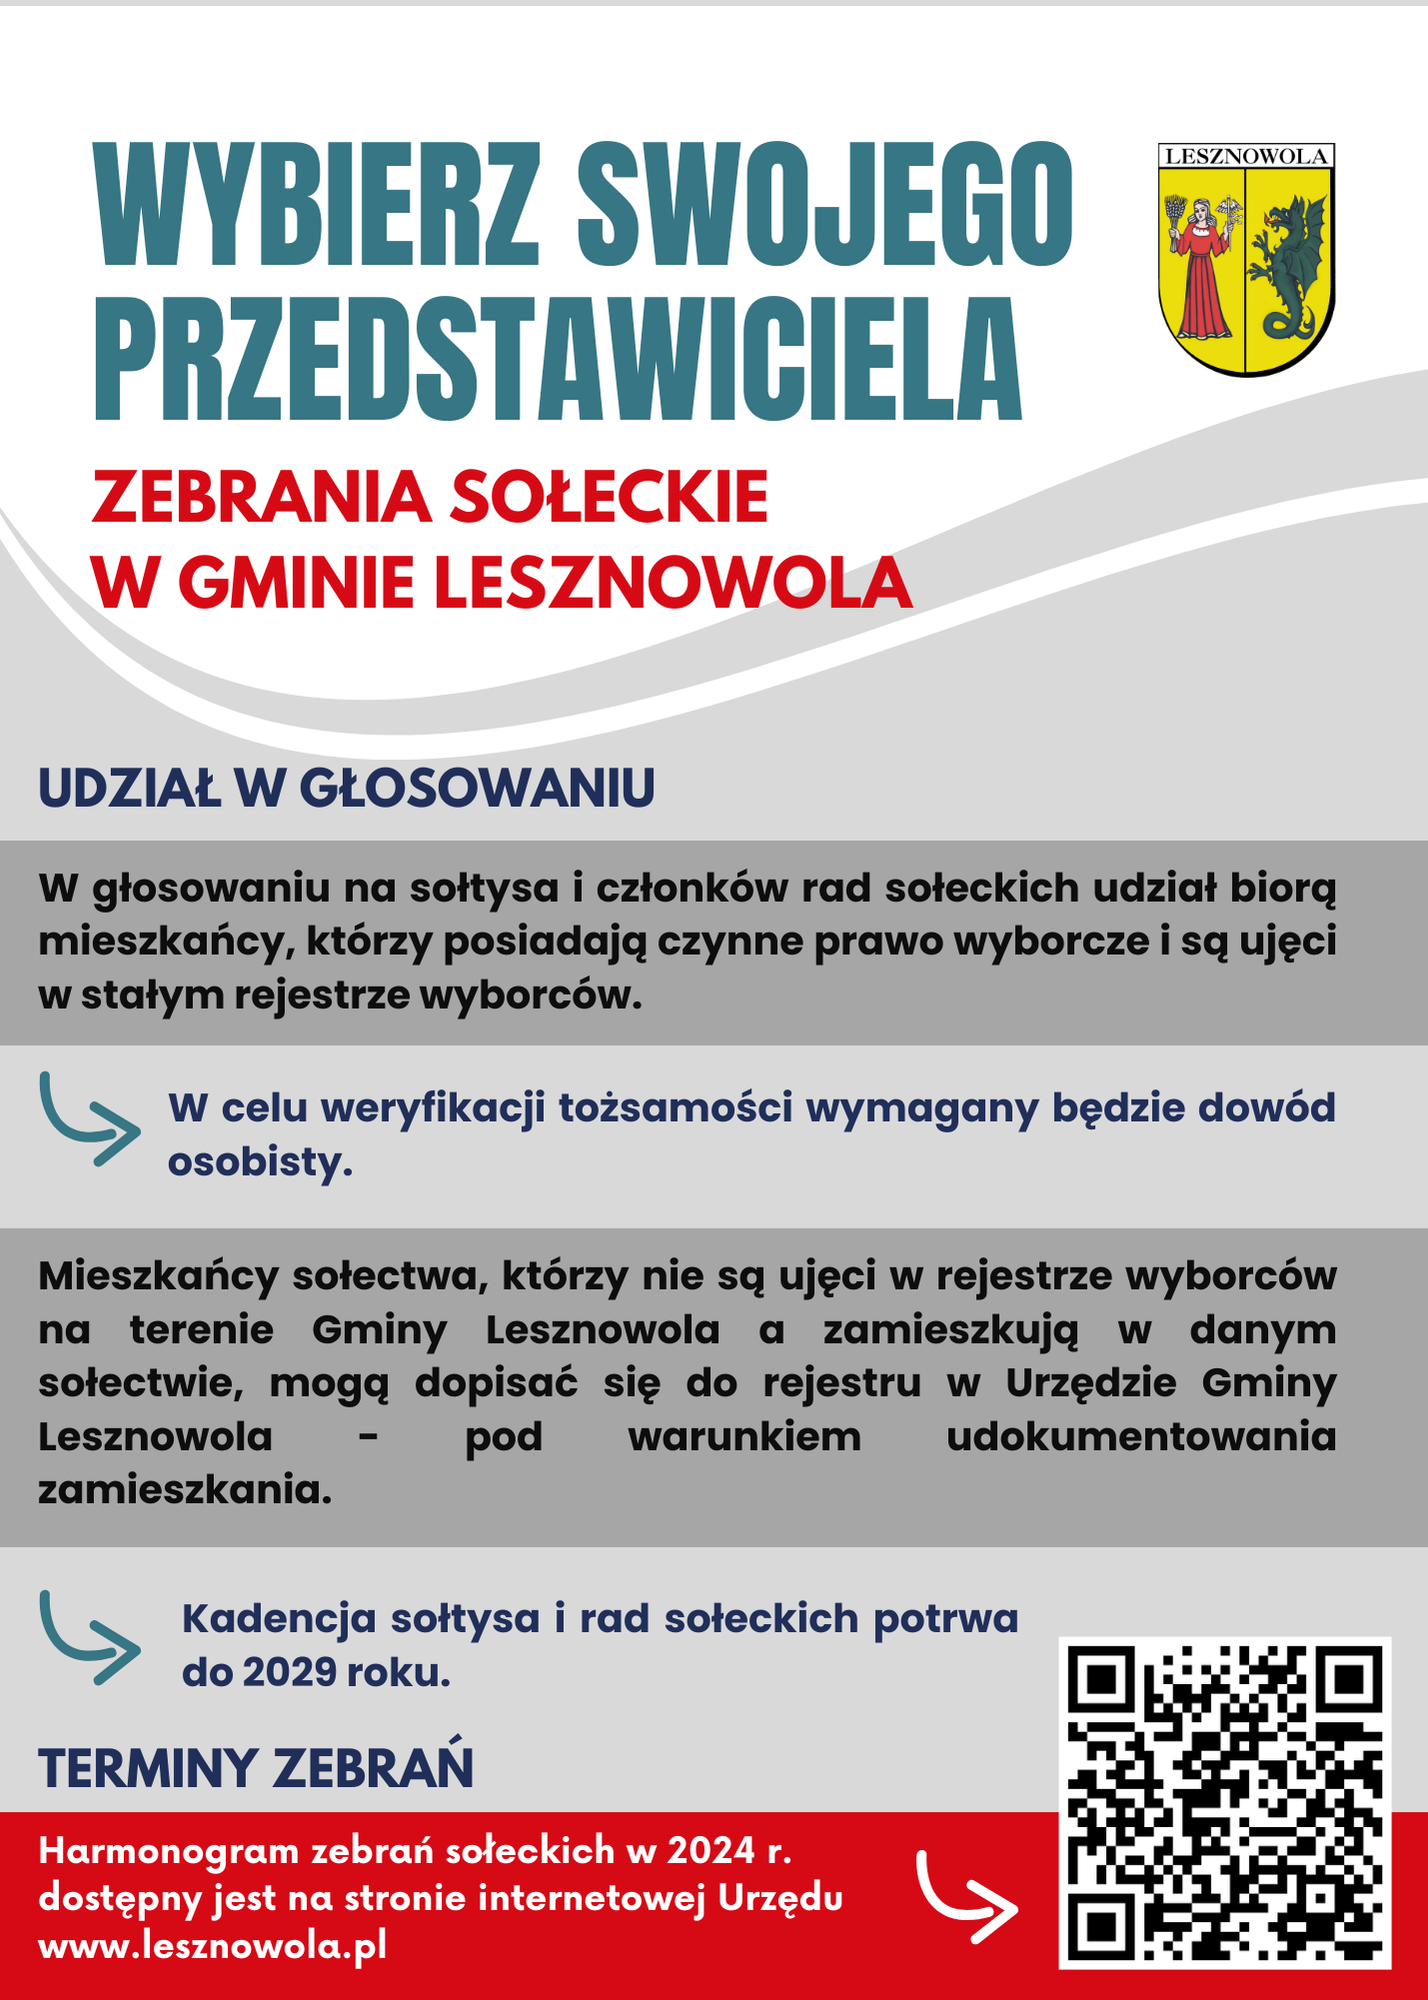 Plakat informacyjny o zebraniach sołeckich, z dużym napisem na górze strony: WYBIERZ SWOJEGO PRZEDSTAWICIELA